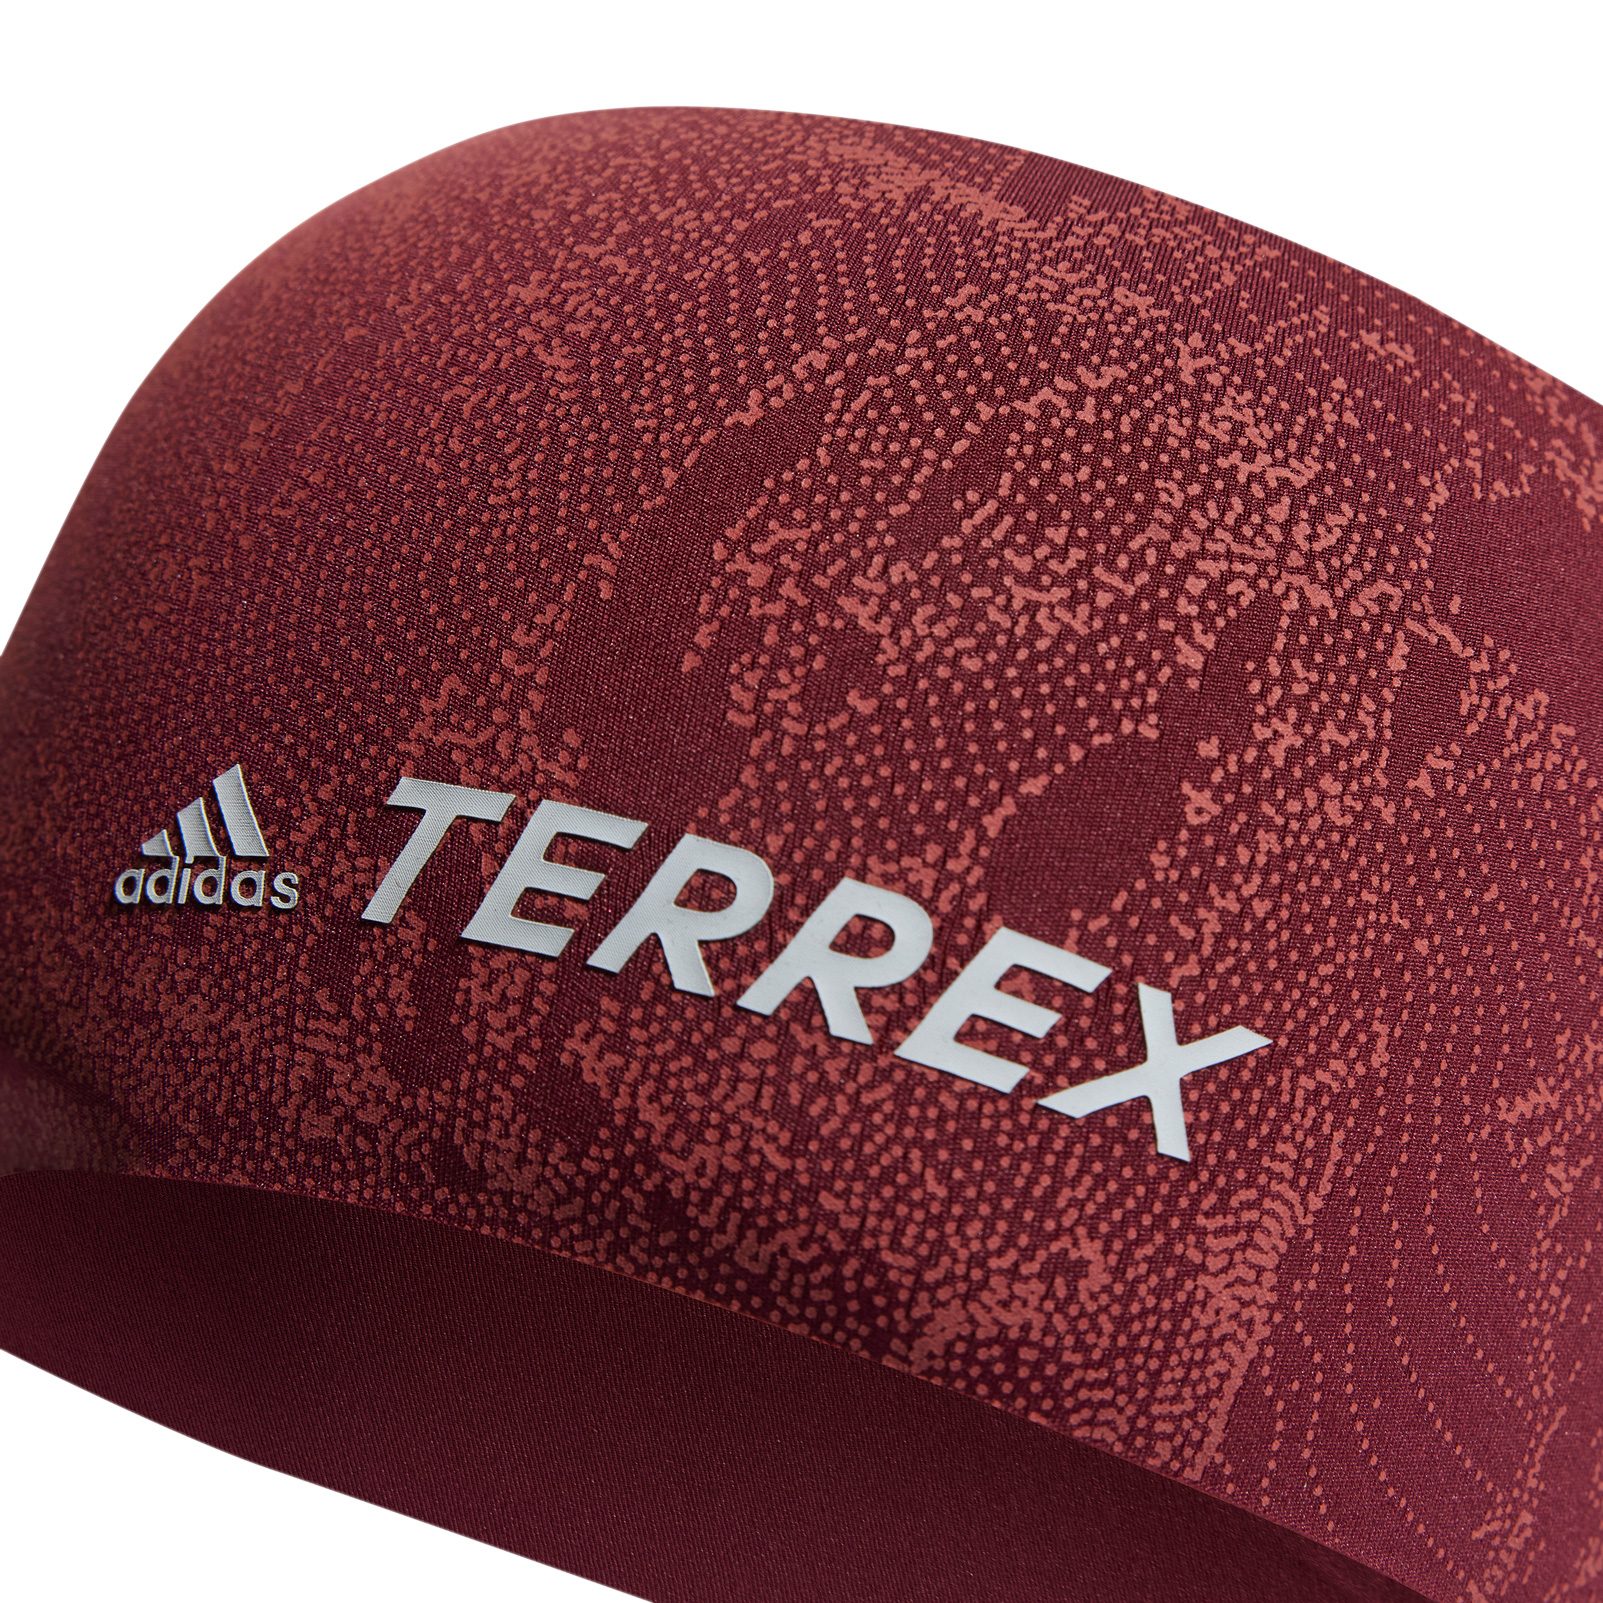 work Sleeping Dismissal adidas TERREX - Terrex Graphic Stirnband Unisex shadow red kaufen im Sport  Bittl Shop